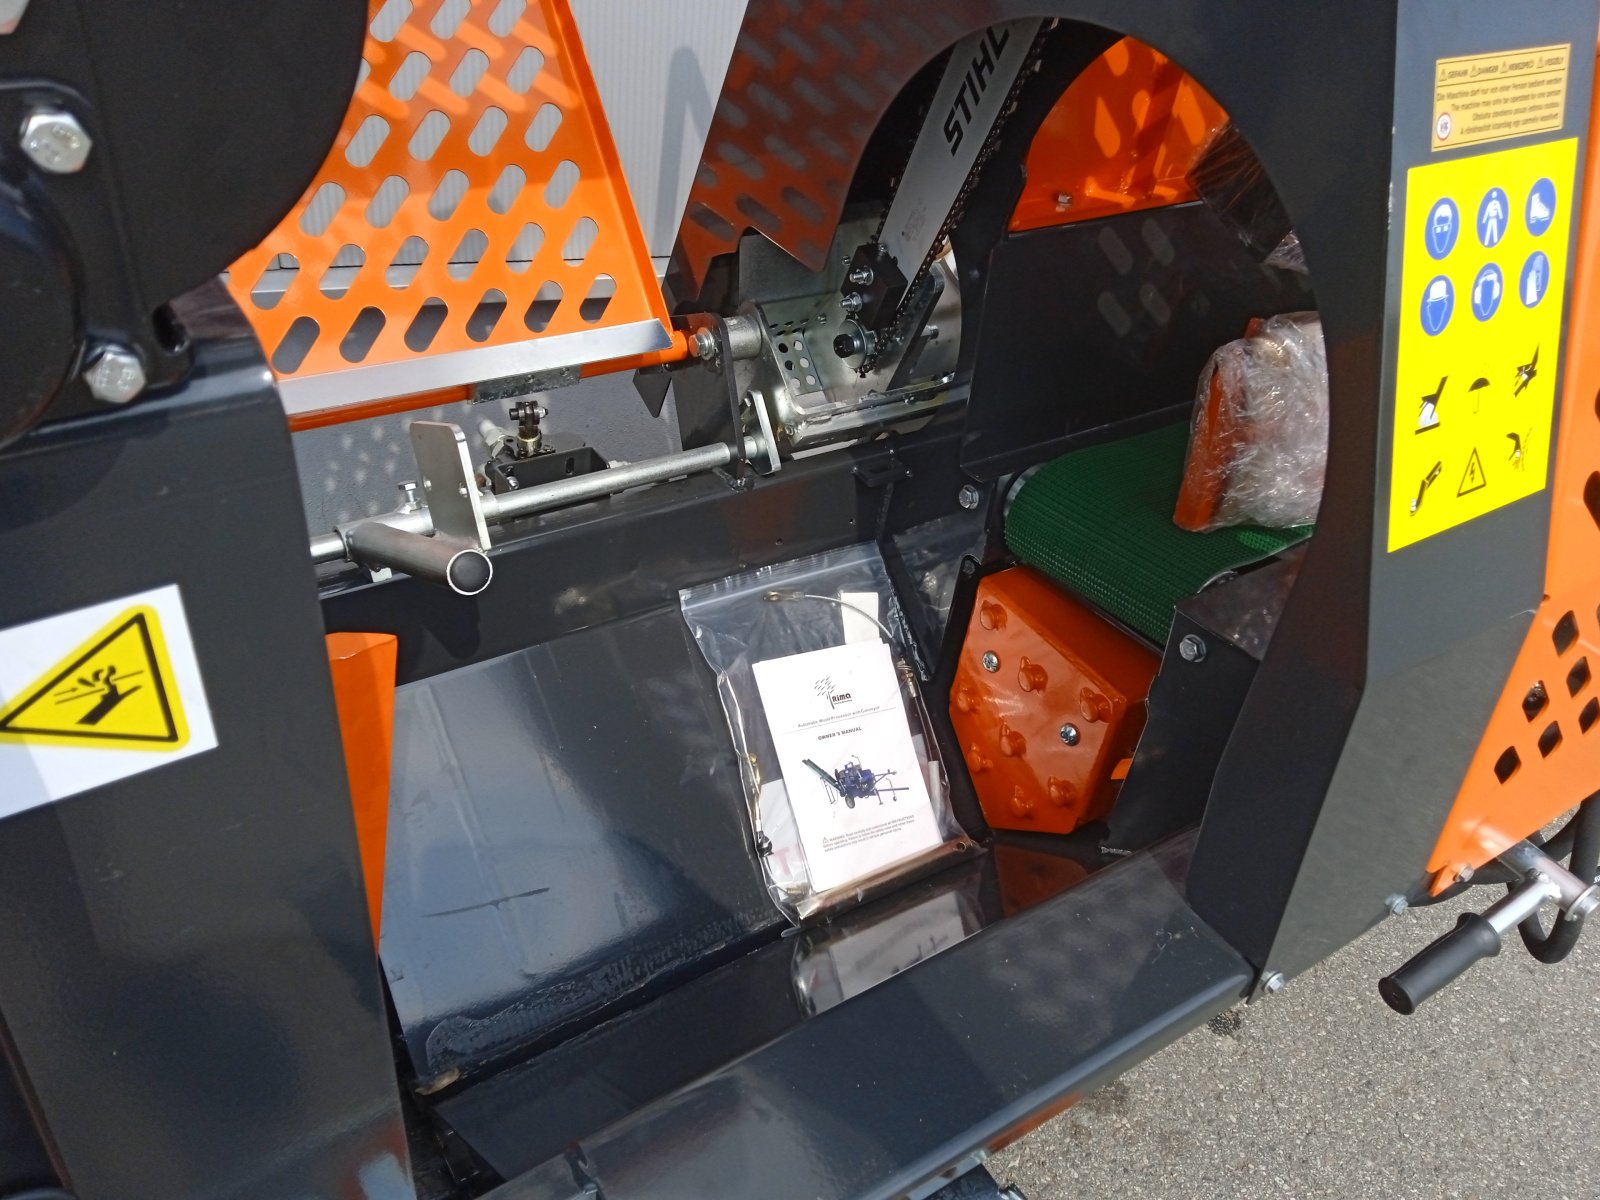 Sägeautomat & Spaltautomat des Typs Woodworker SSP 48/20 Joy, Neumaschine in Nittenau (Bild 4)